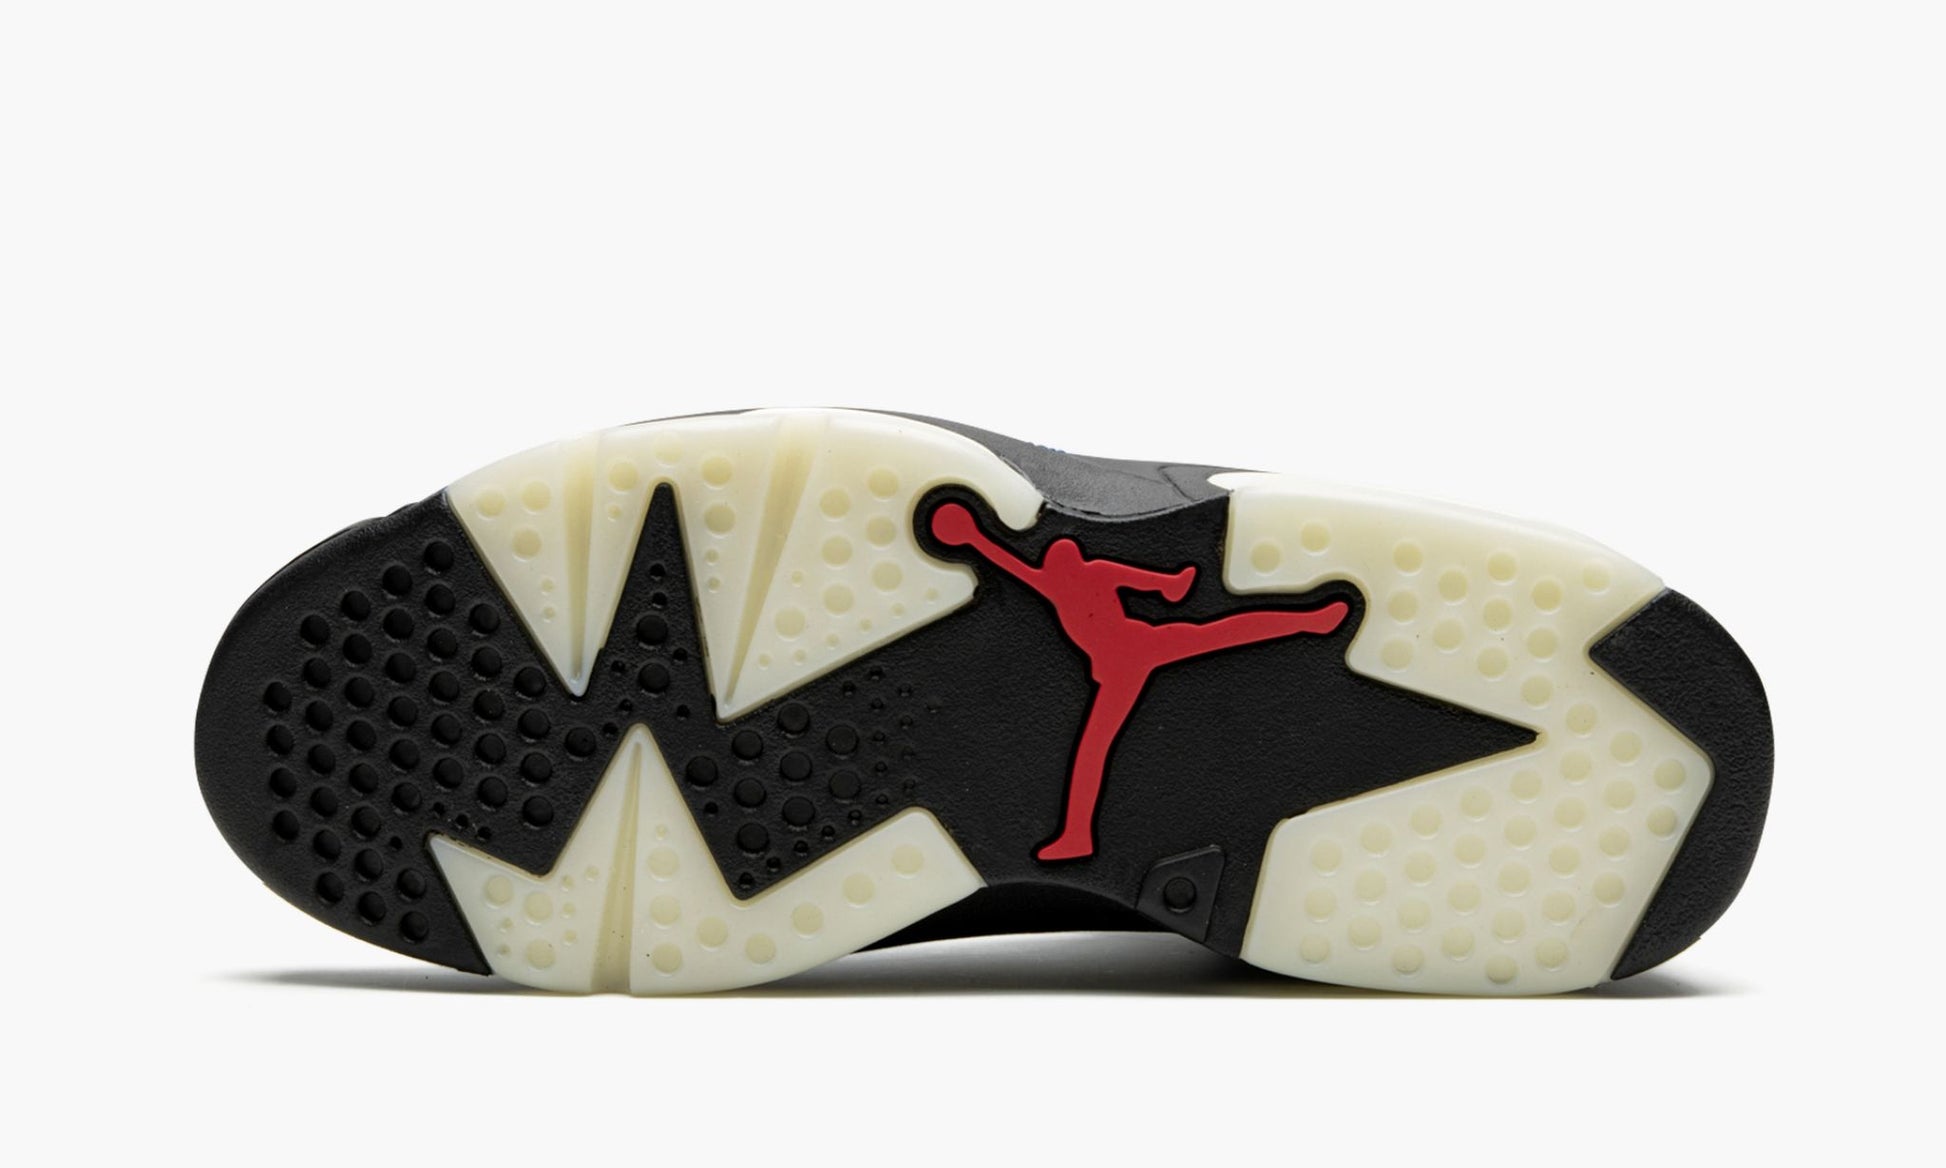 Air Jordan 6 "Washed Denim"